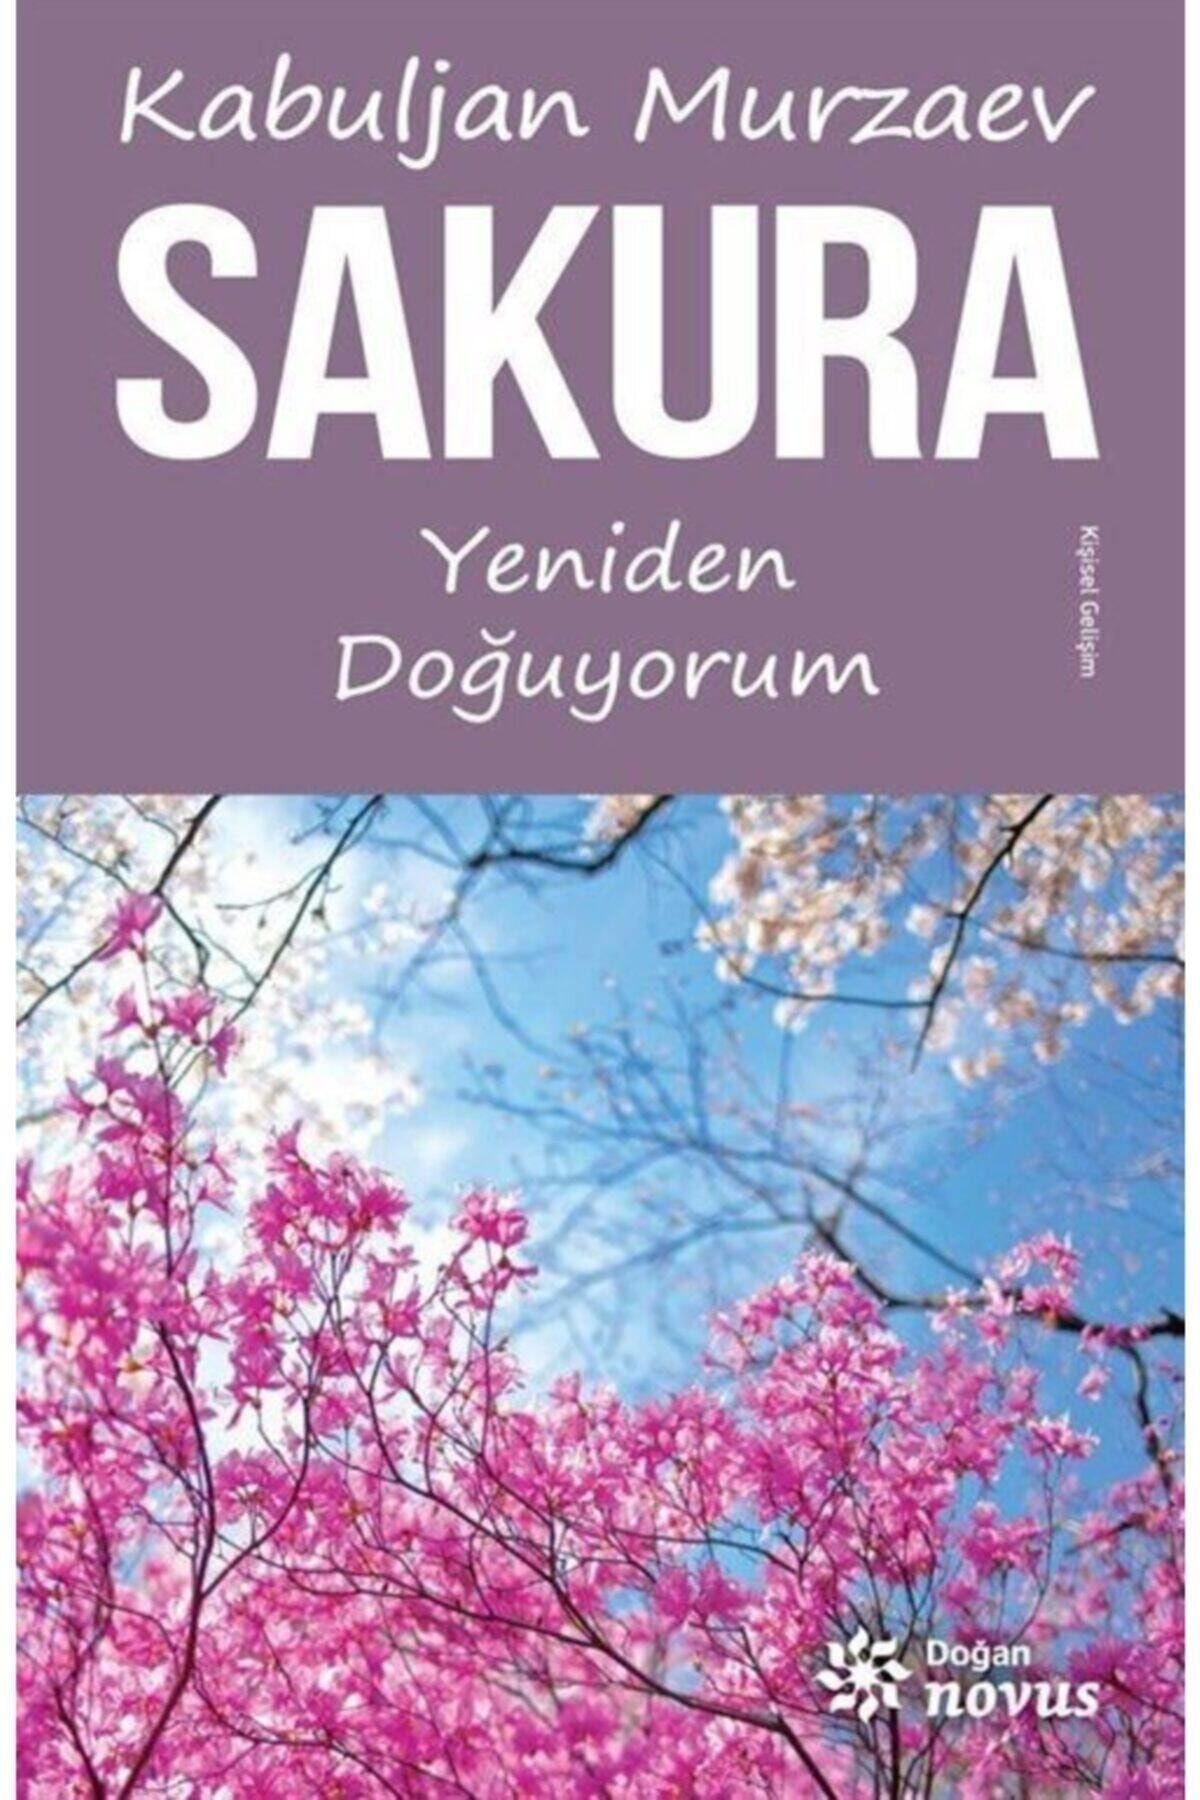 Doğan Novus Sakura - Yeniden Doğuyorum - Kabuljan Murzaev 9786050928334